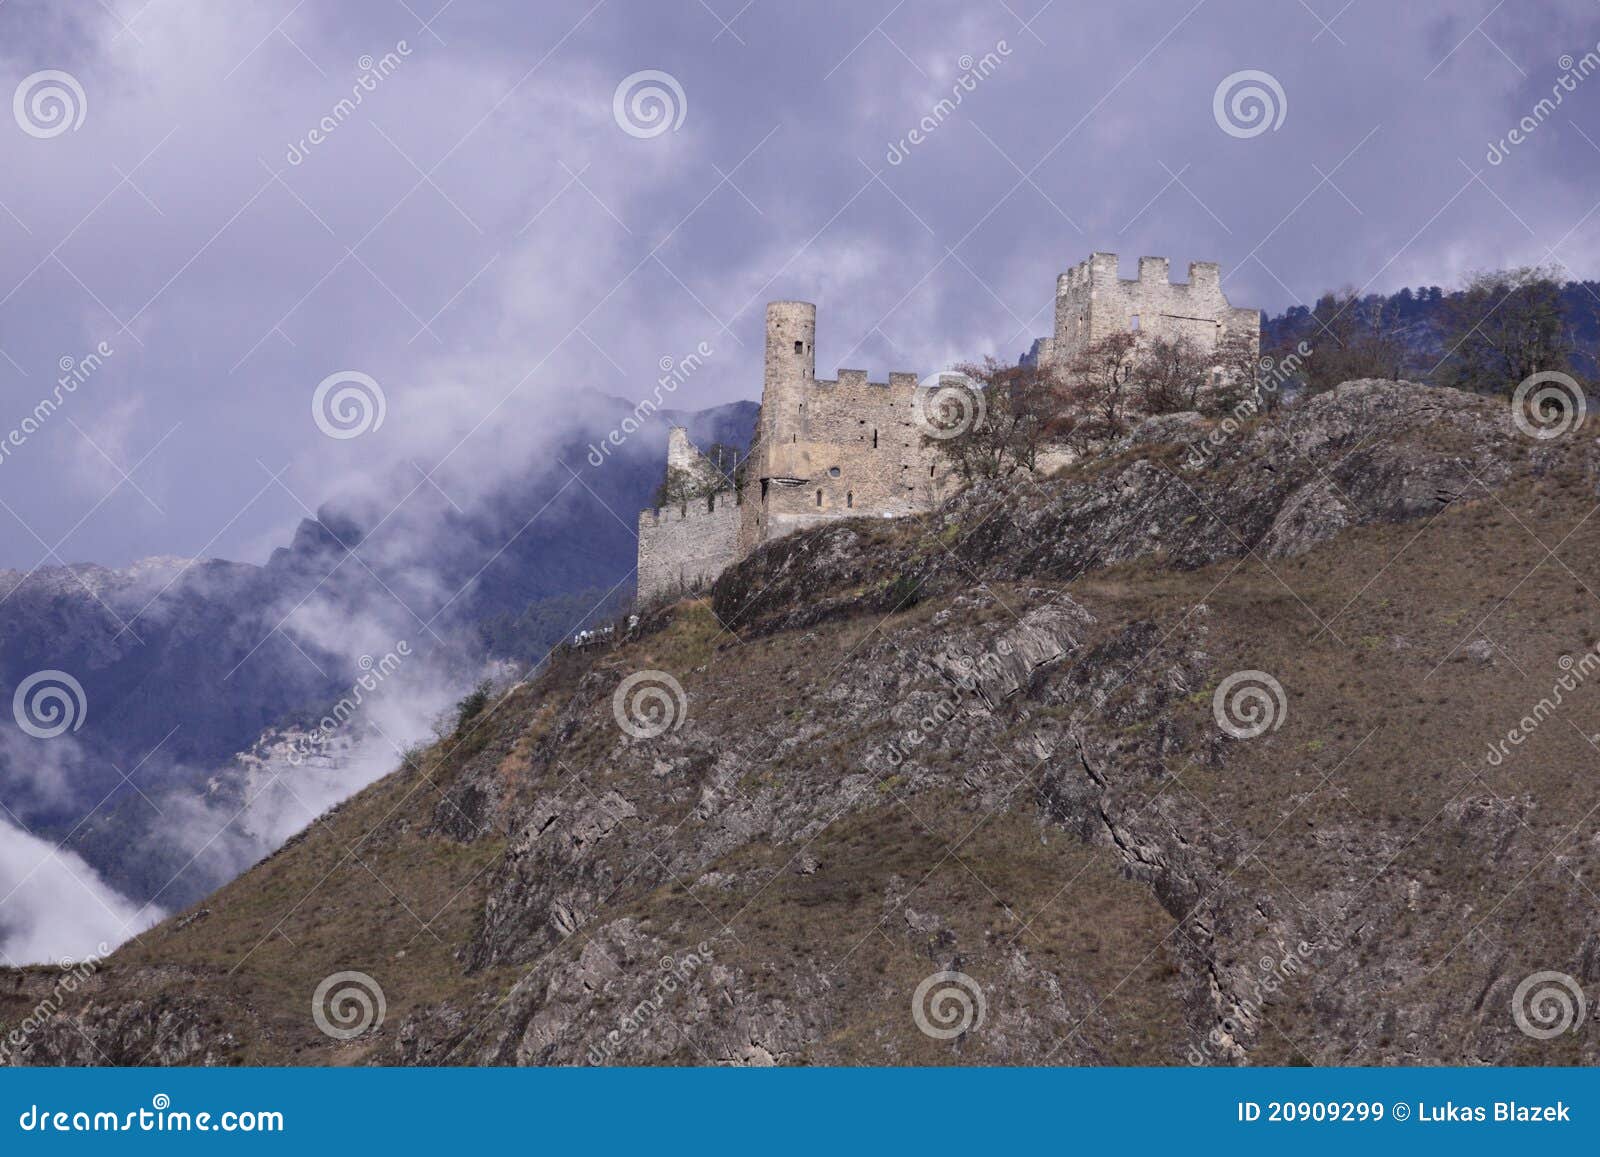 tourbillon castle in sion